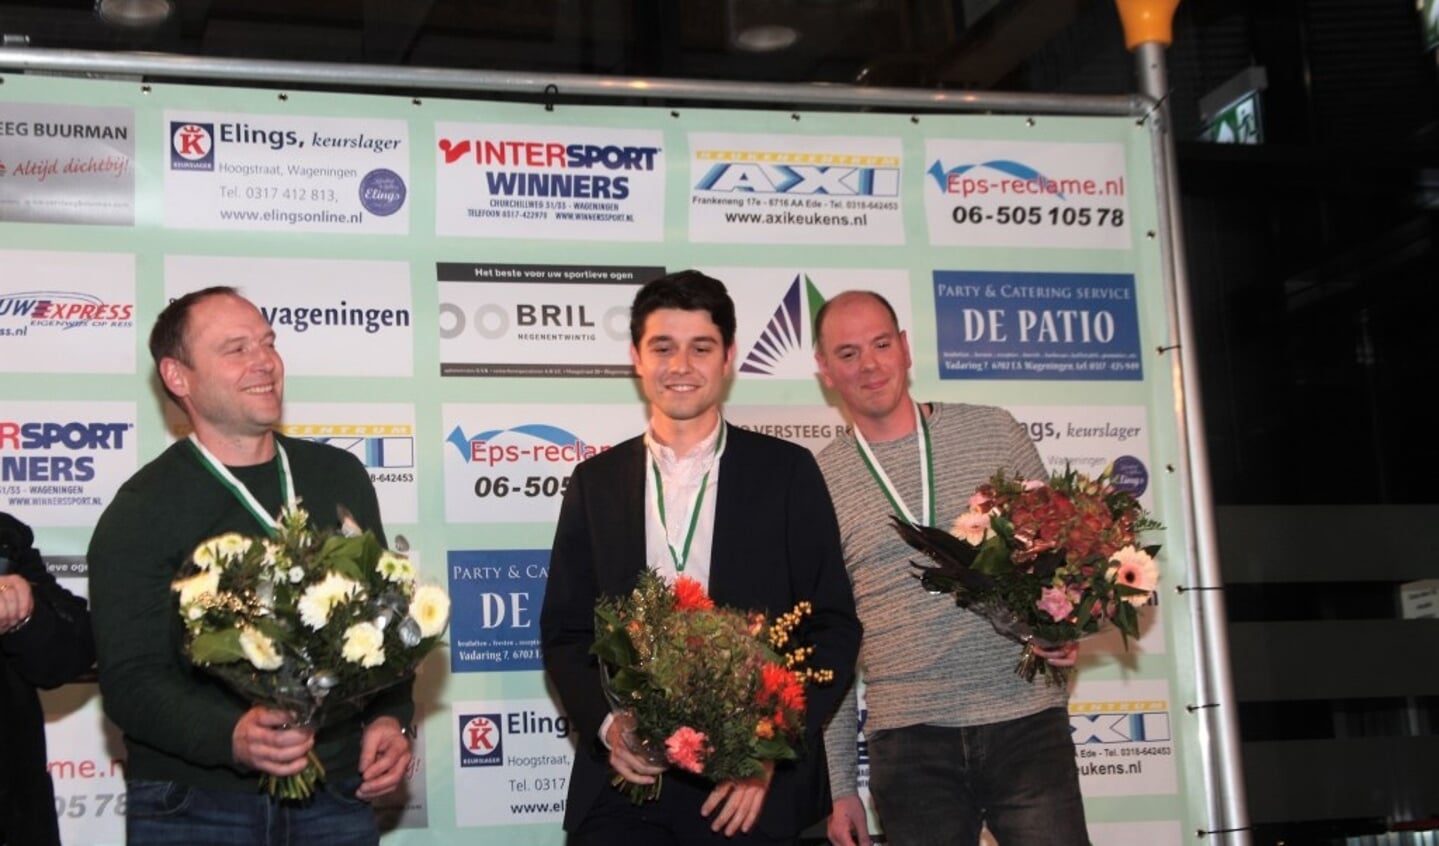 De handboogschutters Willem van Doesburg en Jan-Willem Lentjes en zeiler Eugene HendrikX (midden) waren in de race voor Sportman van het Jaar. Die titel ging echter naar de niet aanwezige dammer, Jan Groenendijk.